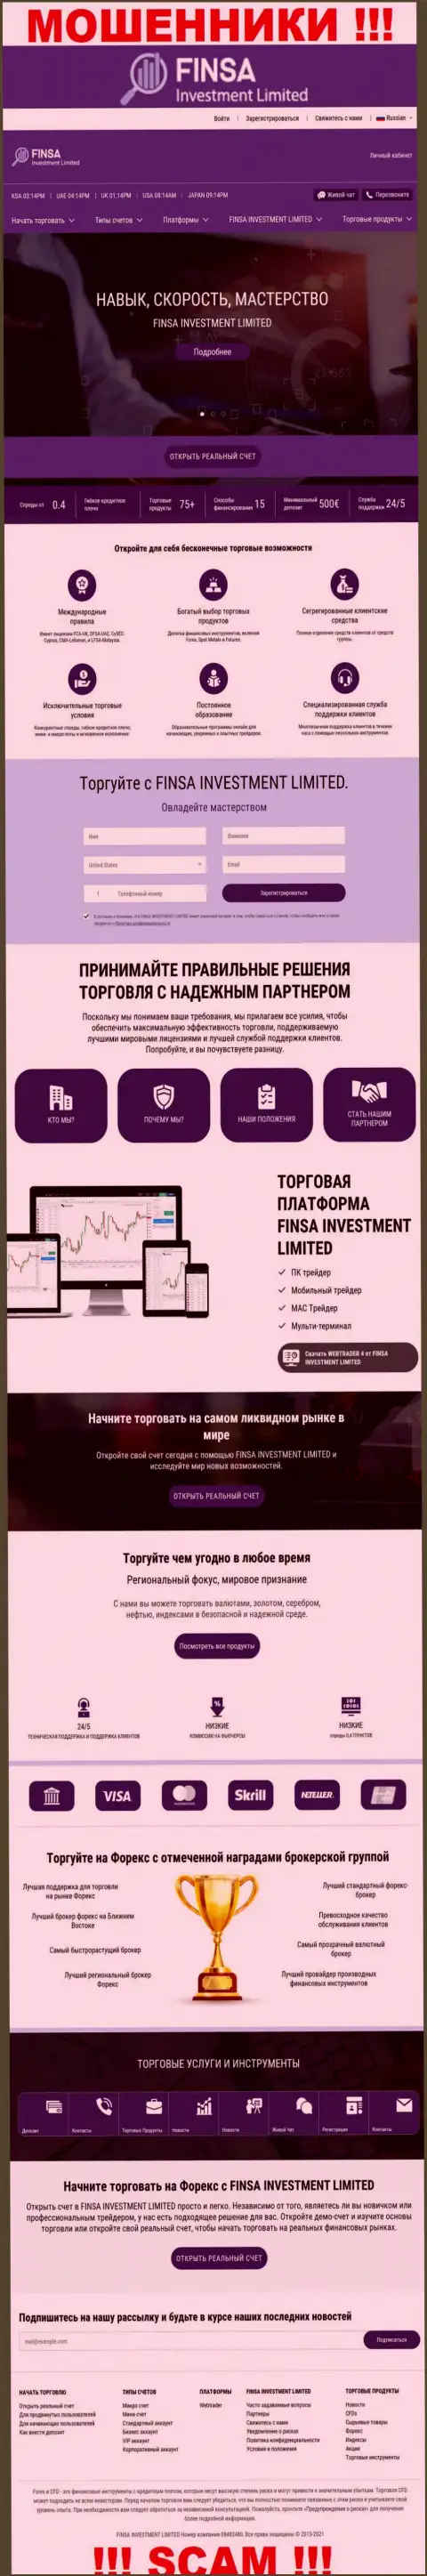 Сайт конторы ФинсаИнвестментЛимитед, заполненный фальшивой информацией